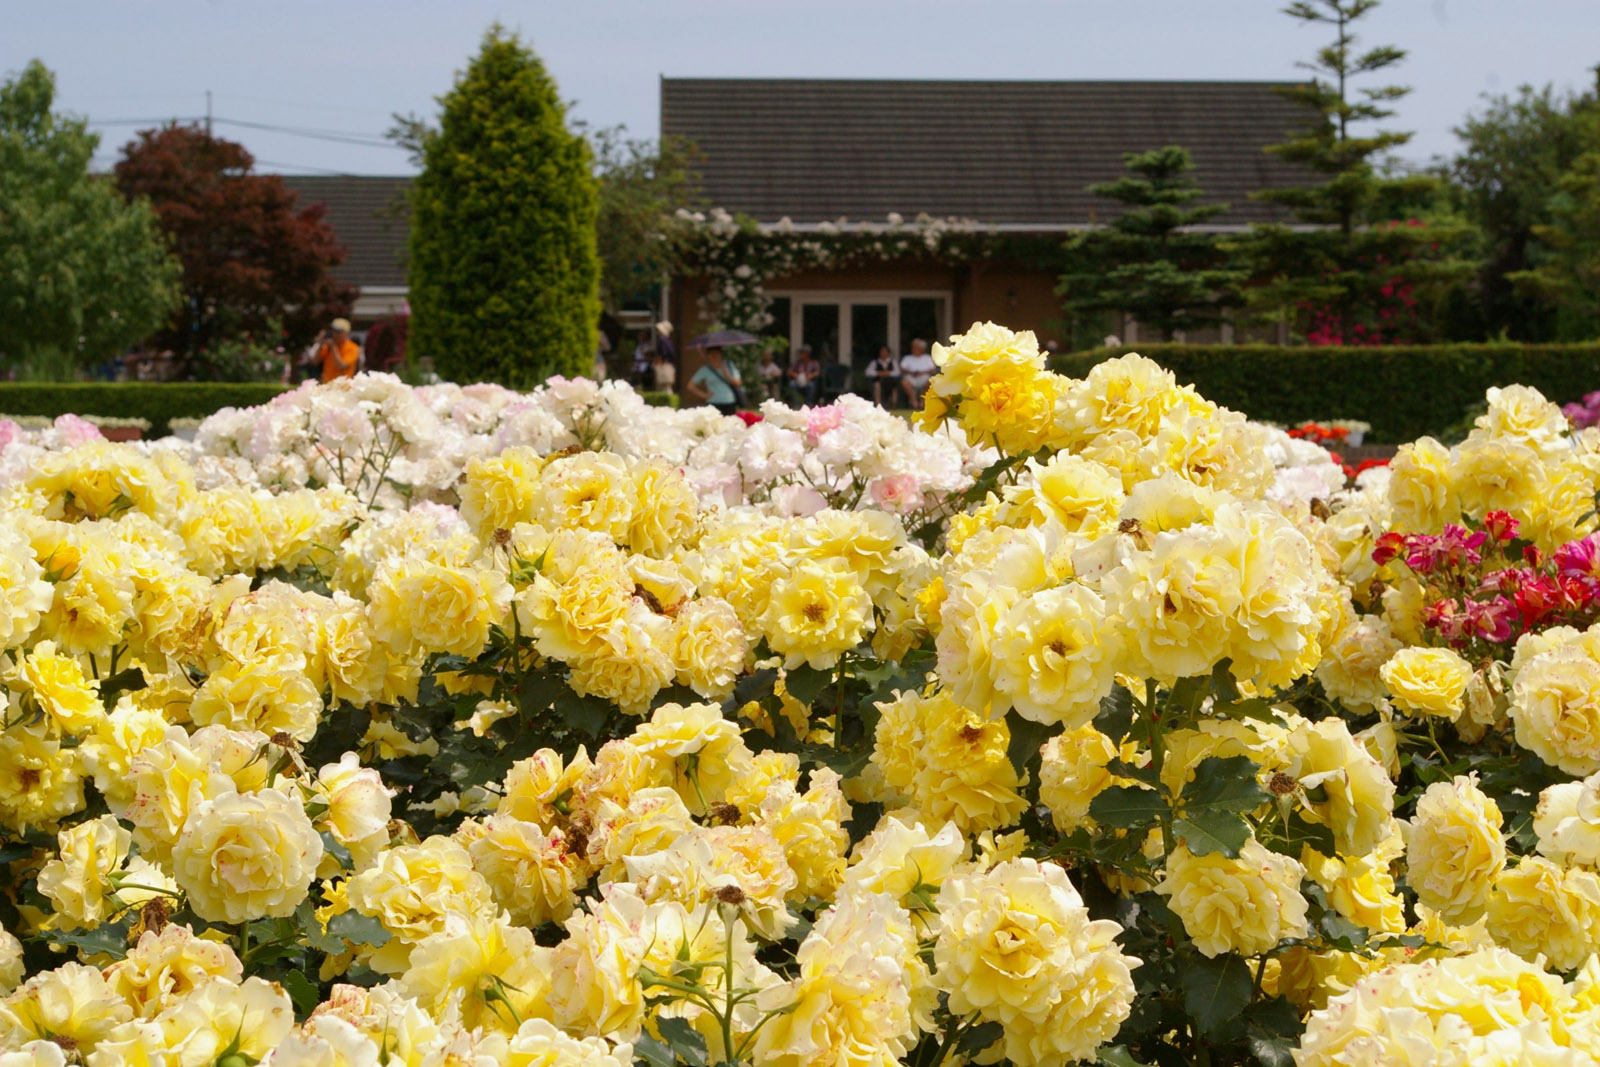 茨城県フラワーパーク 開花情報 バラまつり バラ園案内 バラの見ごろと開花状況